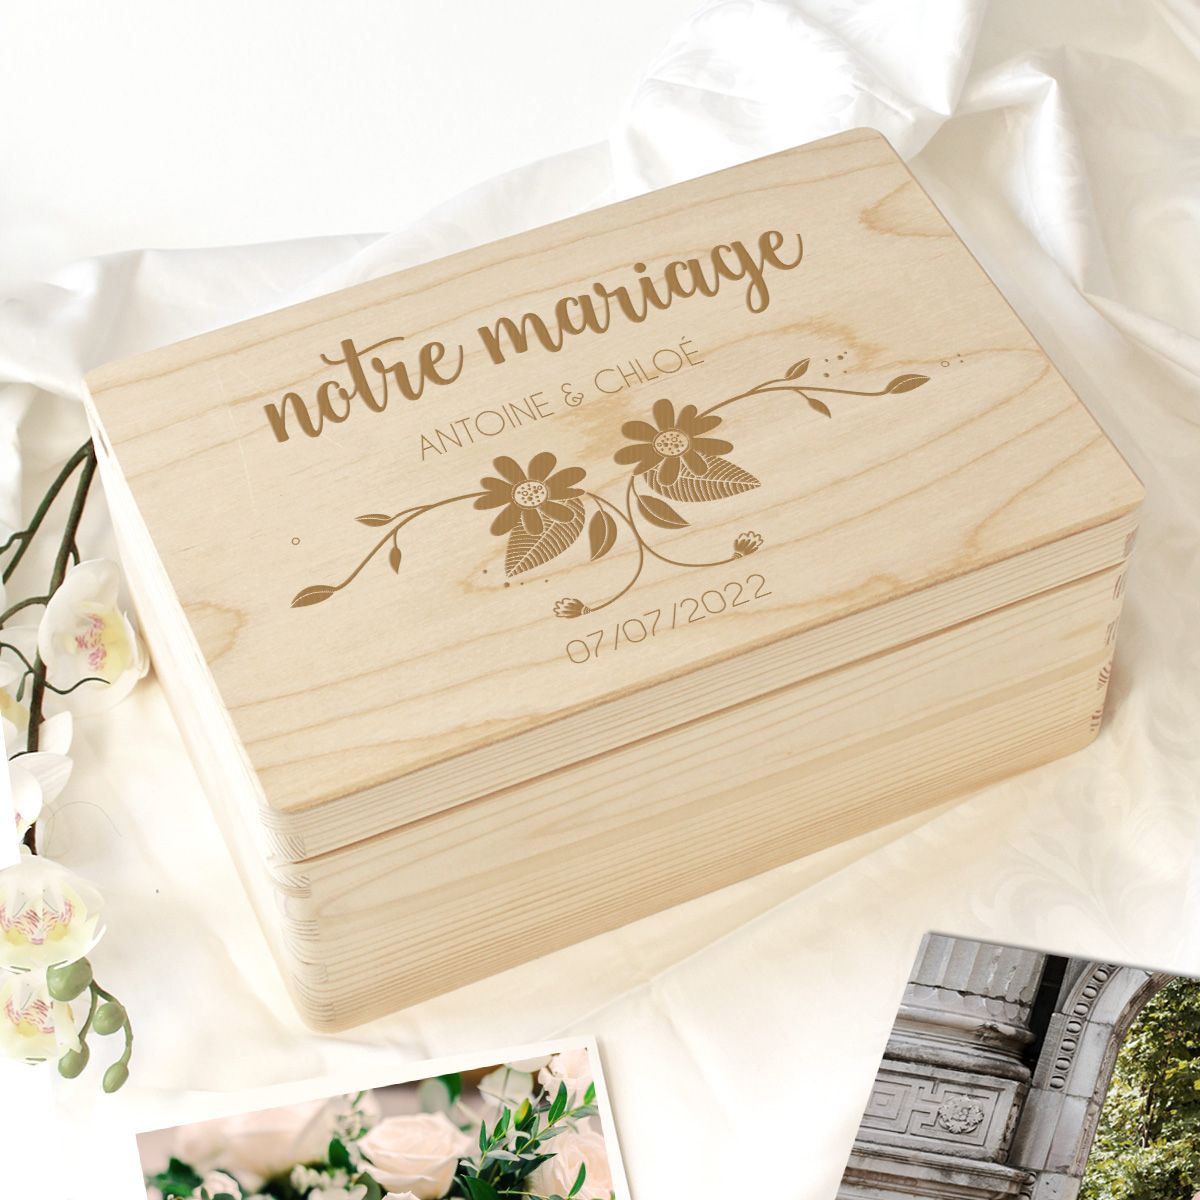 Boîte à souvenirs vrille de fleurs personnalisée pour le mariage